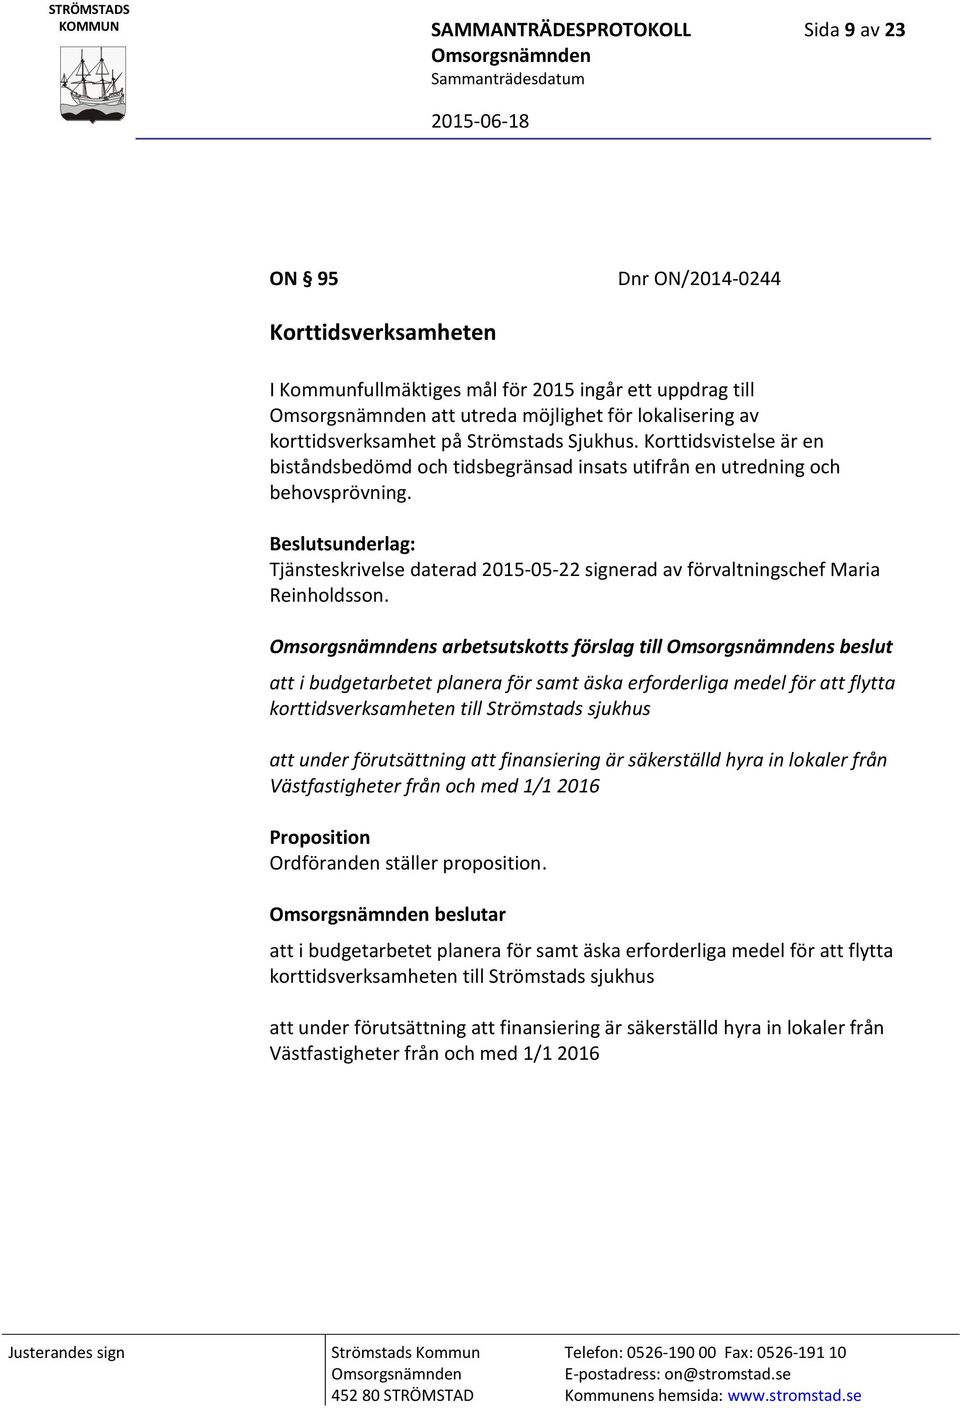 Beslutsunderlag: Tjänsteskrivelse daterad 2015-05-22 signerad av förvaltningschef Maria Reinholdsson.